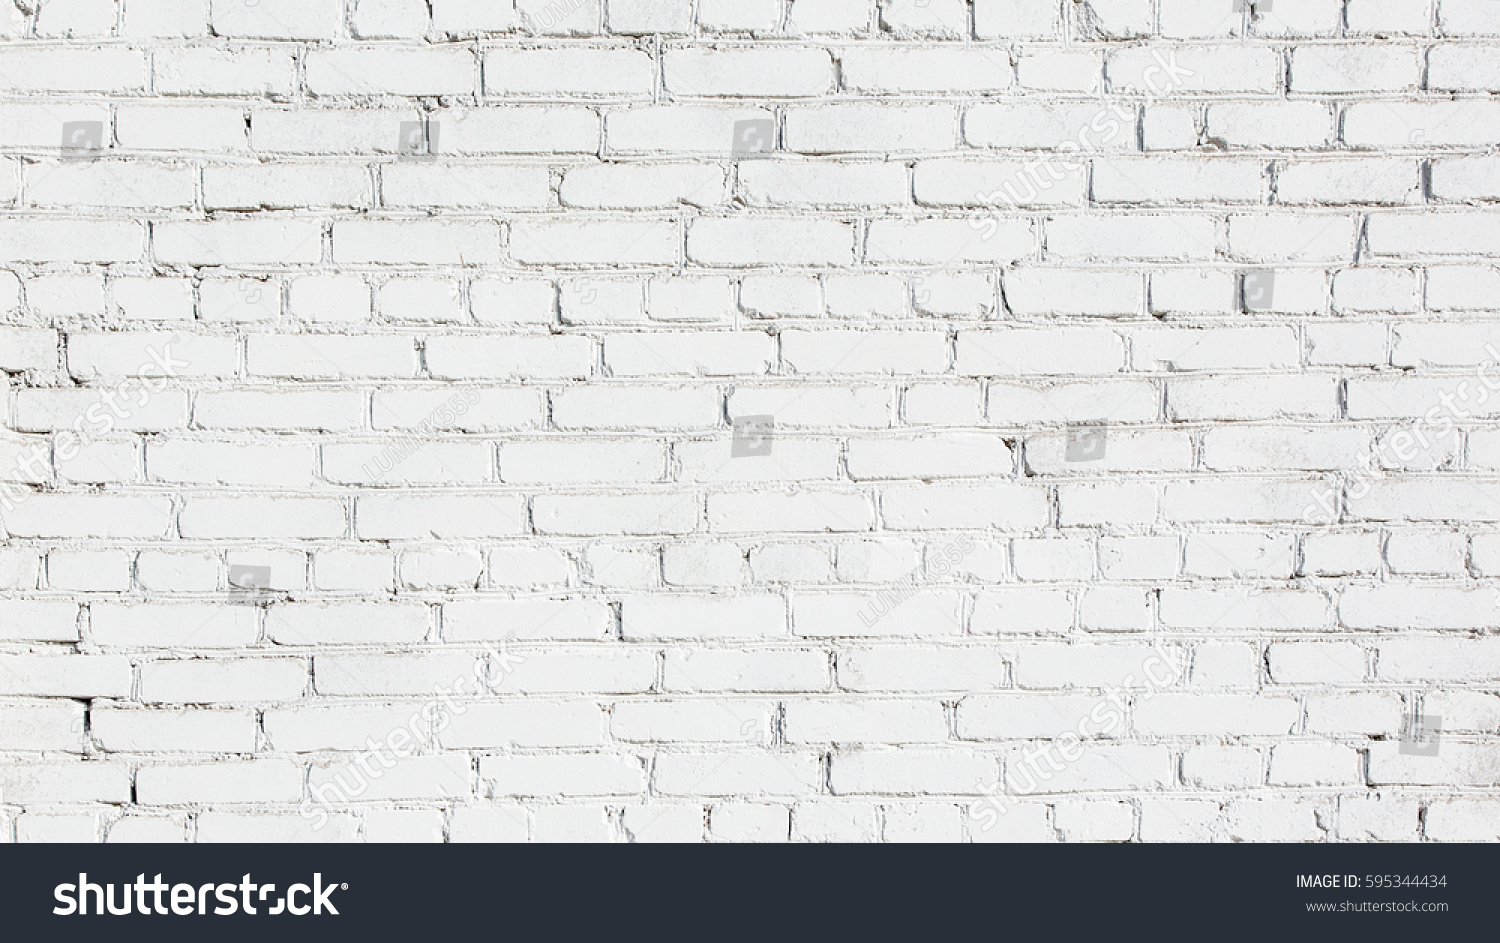 古い漆喰塗りの白いレンガの壁 抽象的な白黒のレンガ壁の背景テクスチャー デザイン用ビンテージ壁紙ウェブバナーワイドスクリーン の写真素材 今すぐ編集